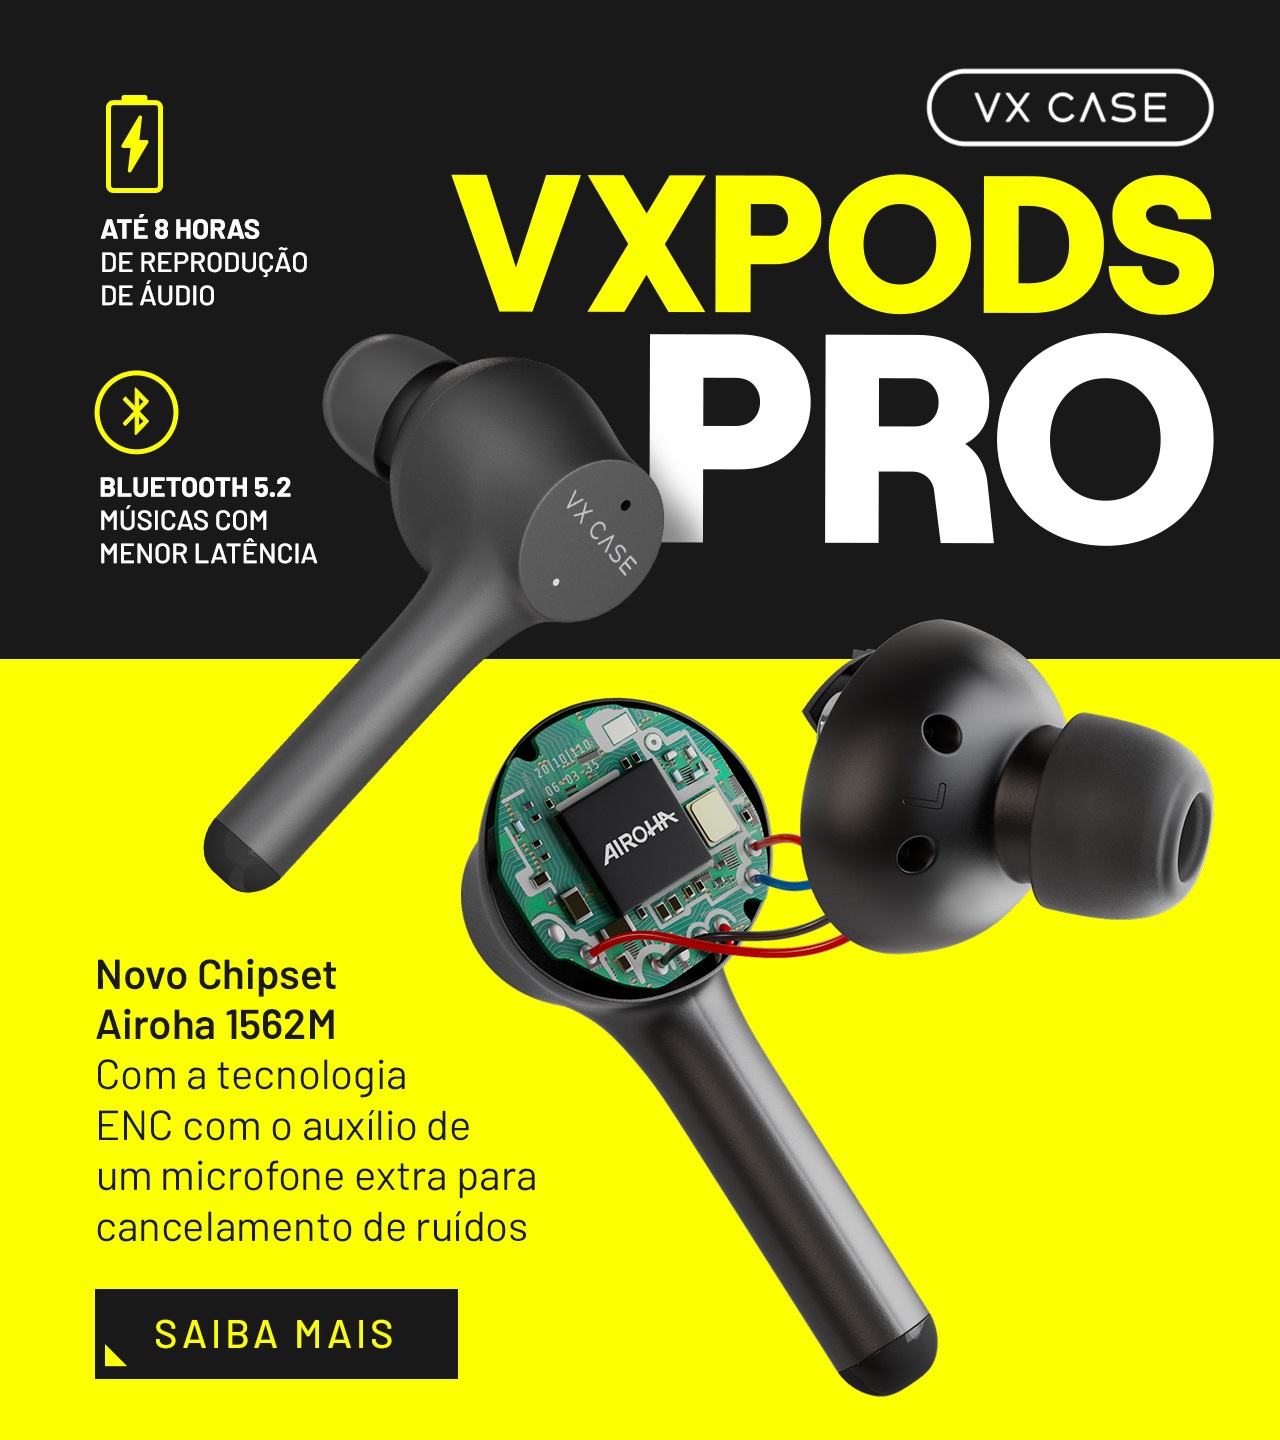 VX Pods Pro - Fones de ouvido com bluetooth 5.2, cancelamento de ruído, tecnologia TWS. Musicas e jogos com baixa latência - VX Case